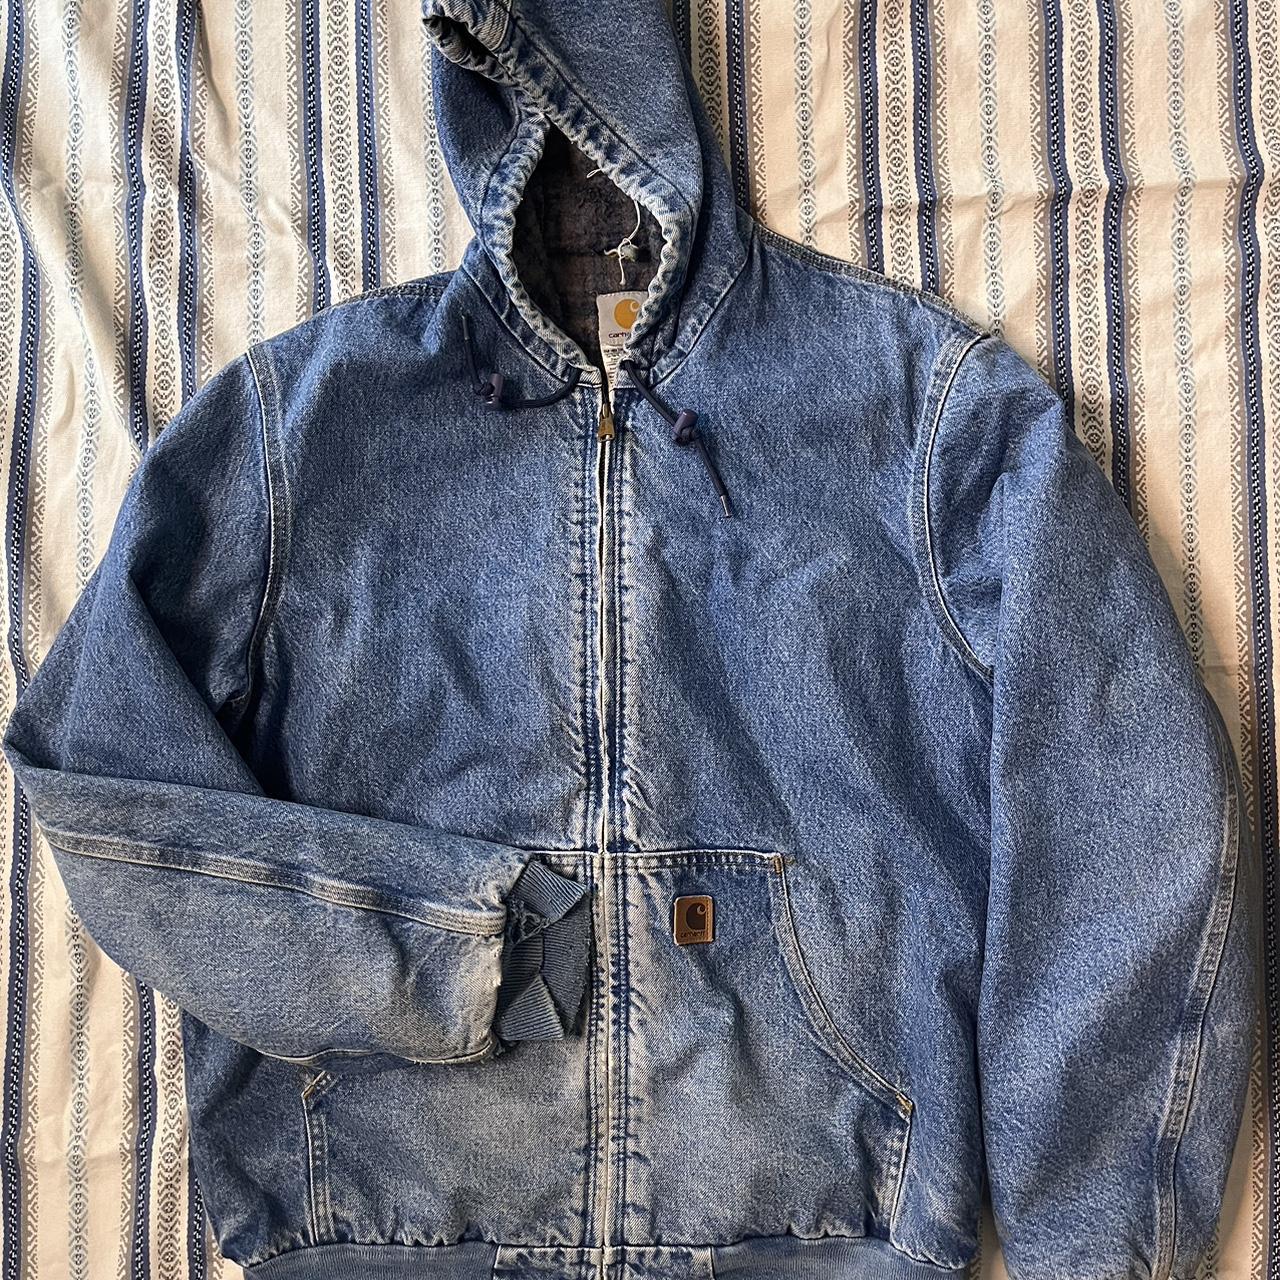 Vintage Carhart denim jacket flannel, blanket lined... - Depop